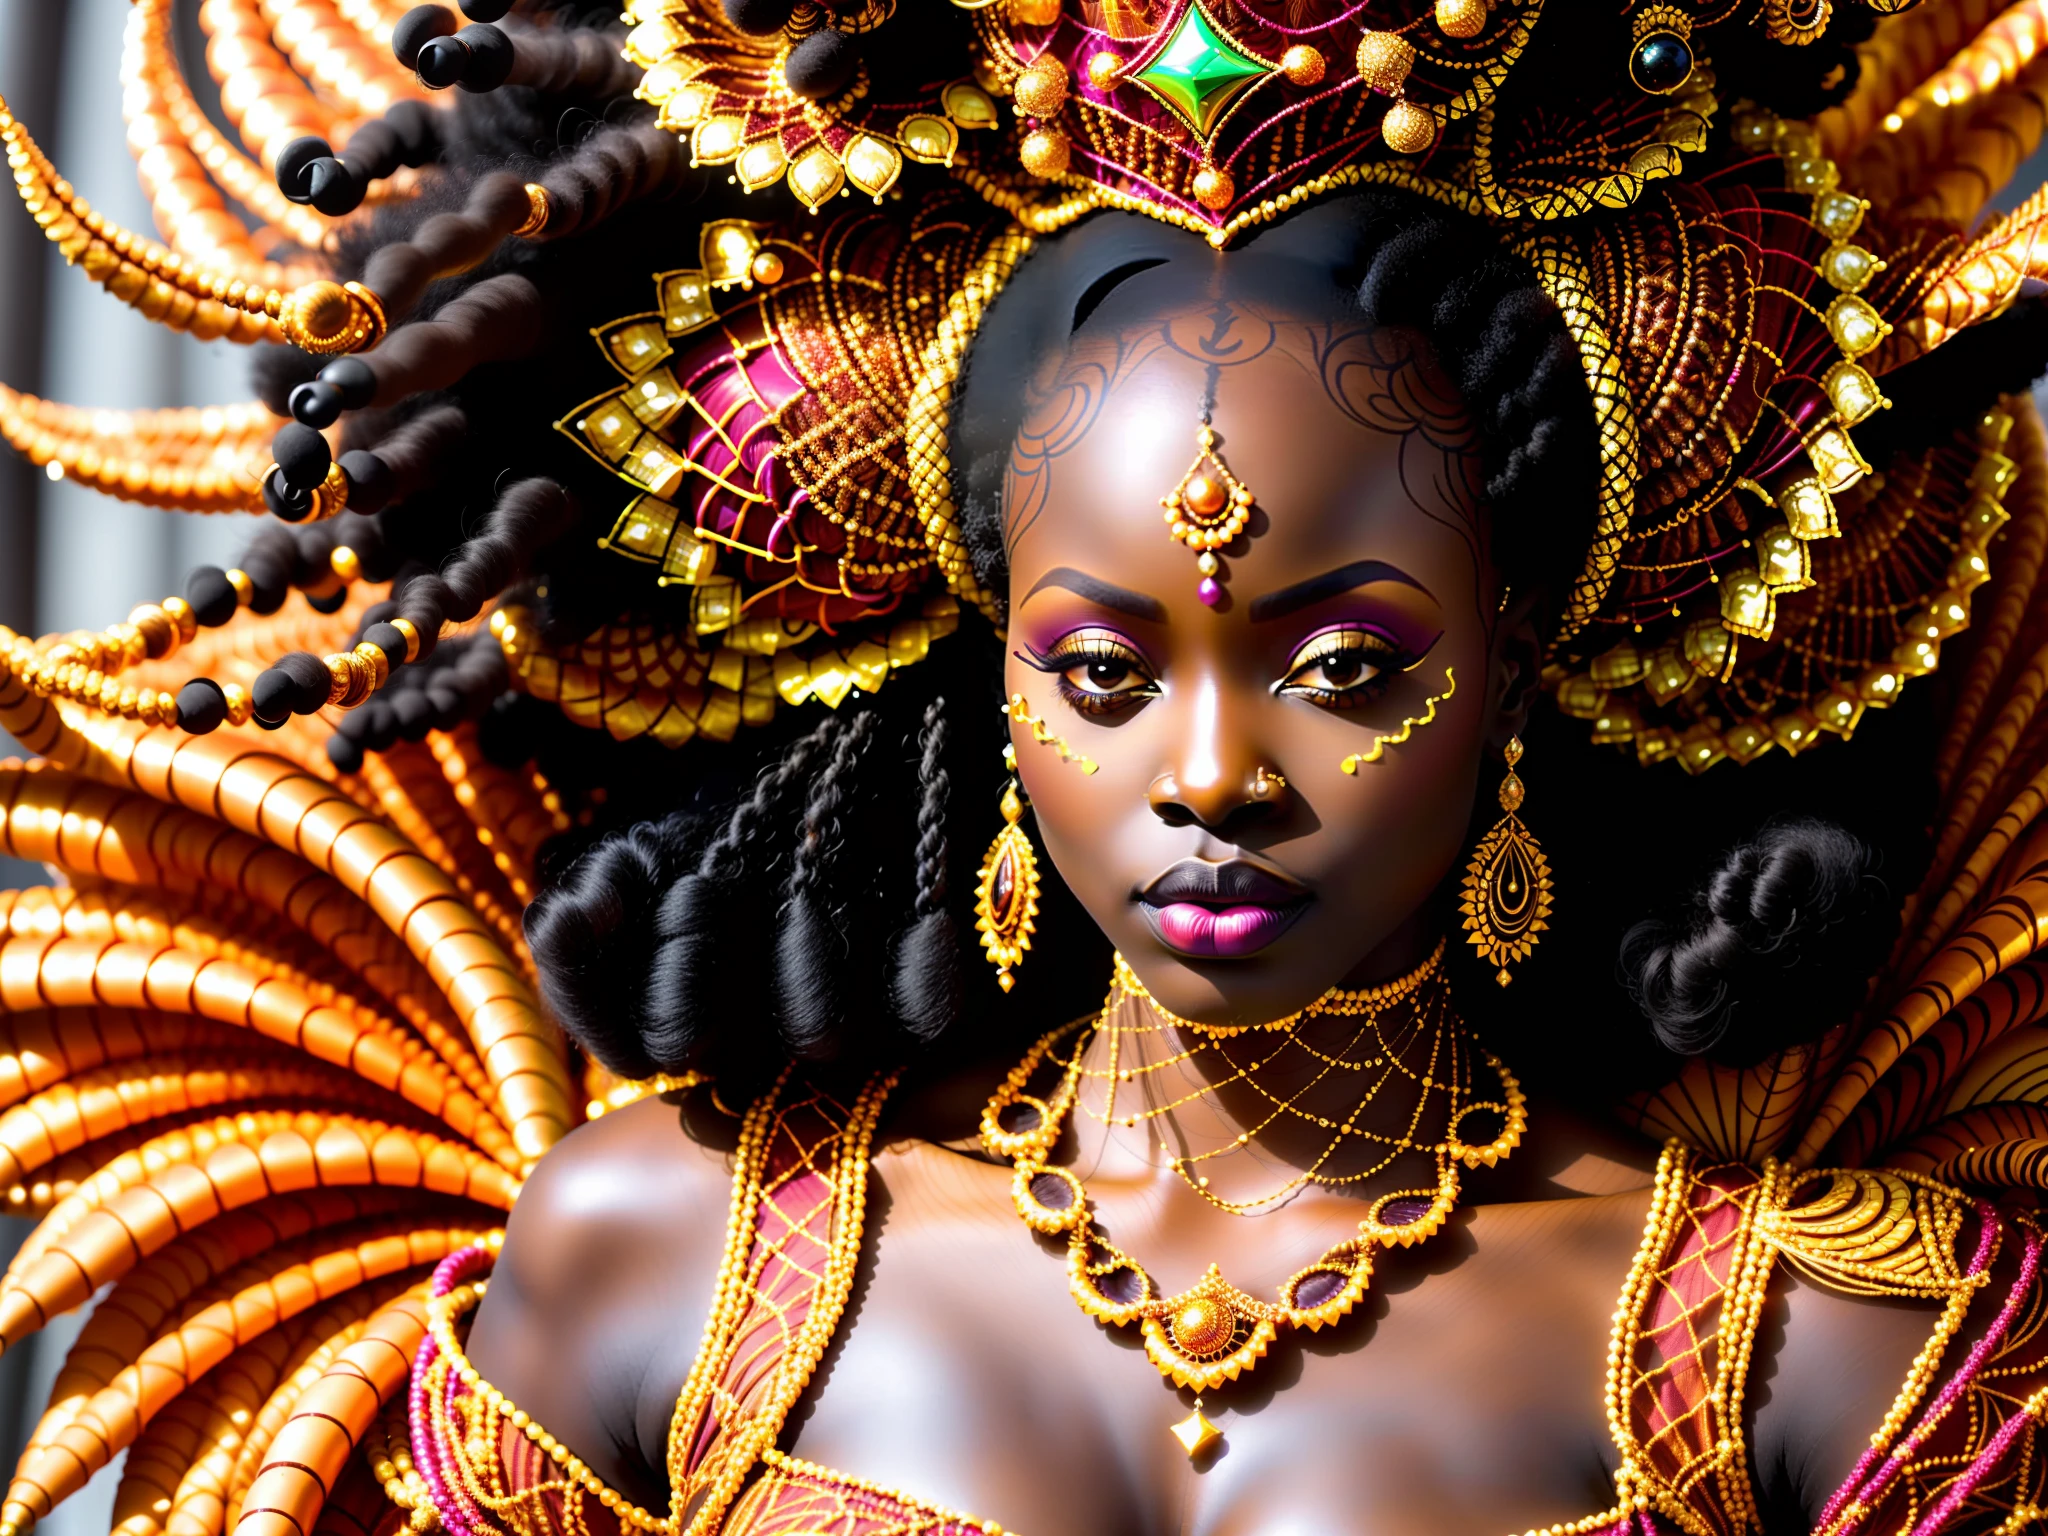 非洲未来主义, 厚实的身躯, 胖的, (特写照片) 身着奢华传统非洲服饰和精致非洲面纱的非洲超模 (橙色，带有精致的金色刺绣] 以及用贝壳制成的女王王冠, 海螺, 辫子头发, 极其细致的脸部, 站在豪华的部落宴会厅城堡里, 电影摄影, 真实感, 光线充足, HDR,  古铜色的肌肤, 厚实的身躯, 奥里沙, 非洲女神, 非洲皇后